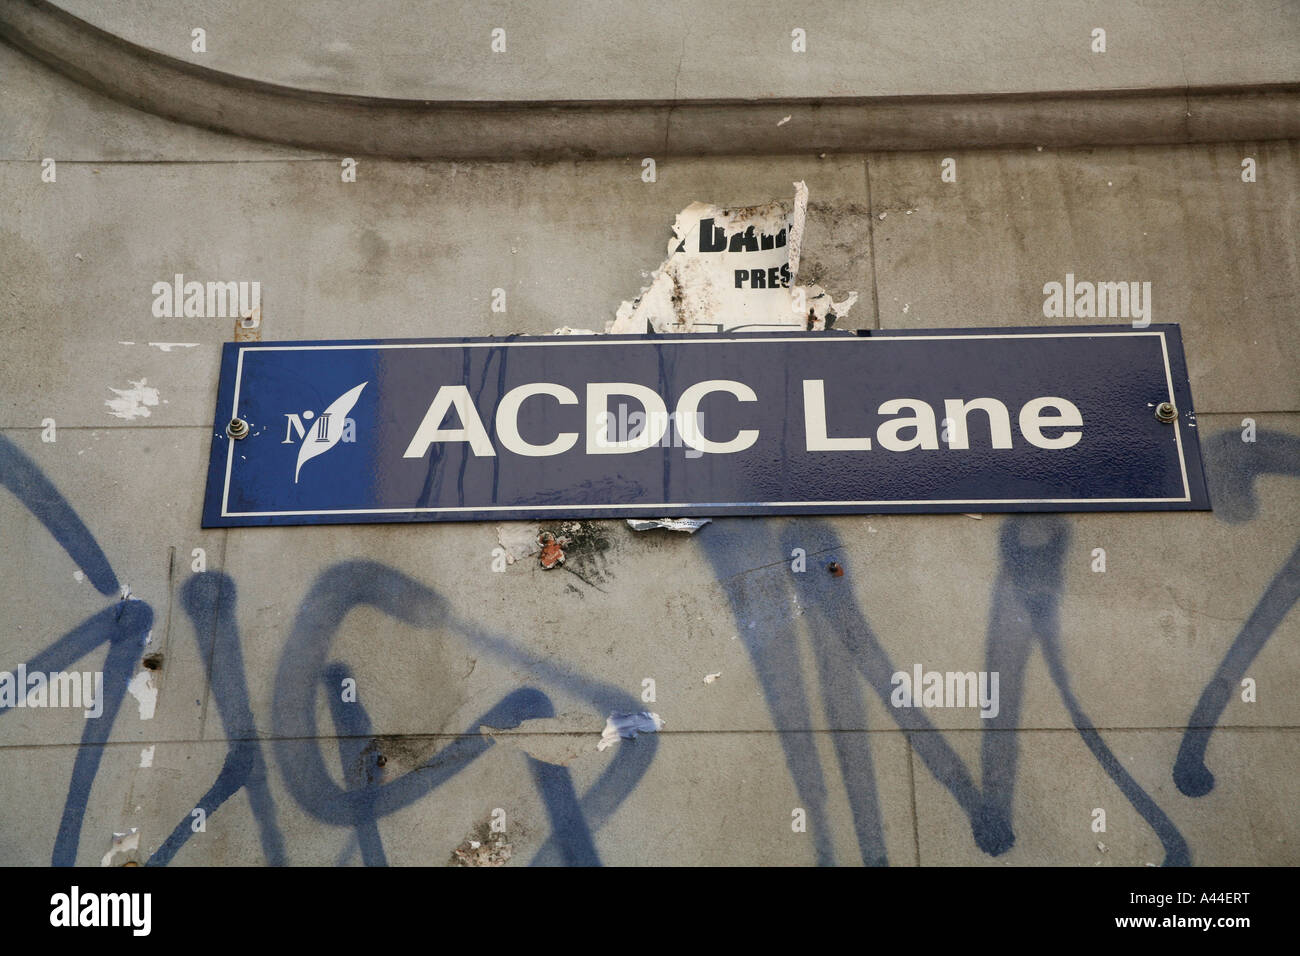 ACDC Lane, Melbourne, Australia Stock Photo